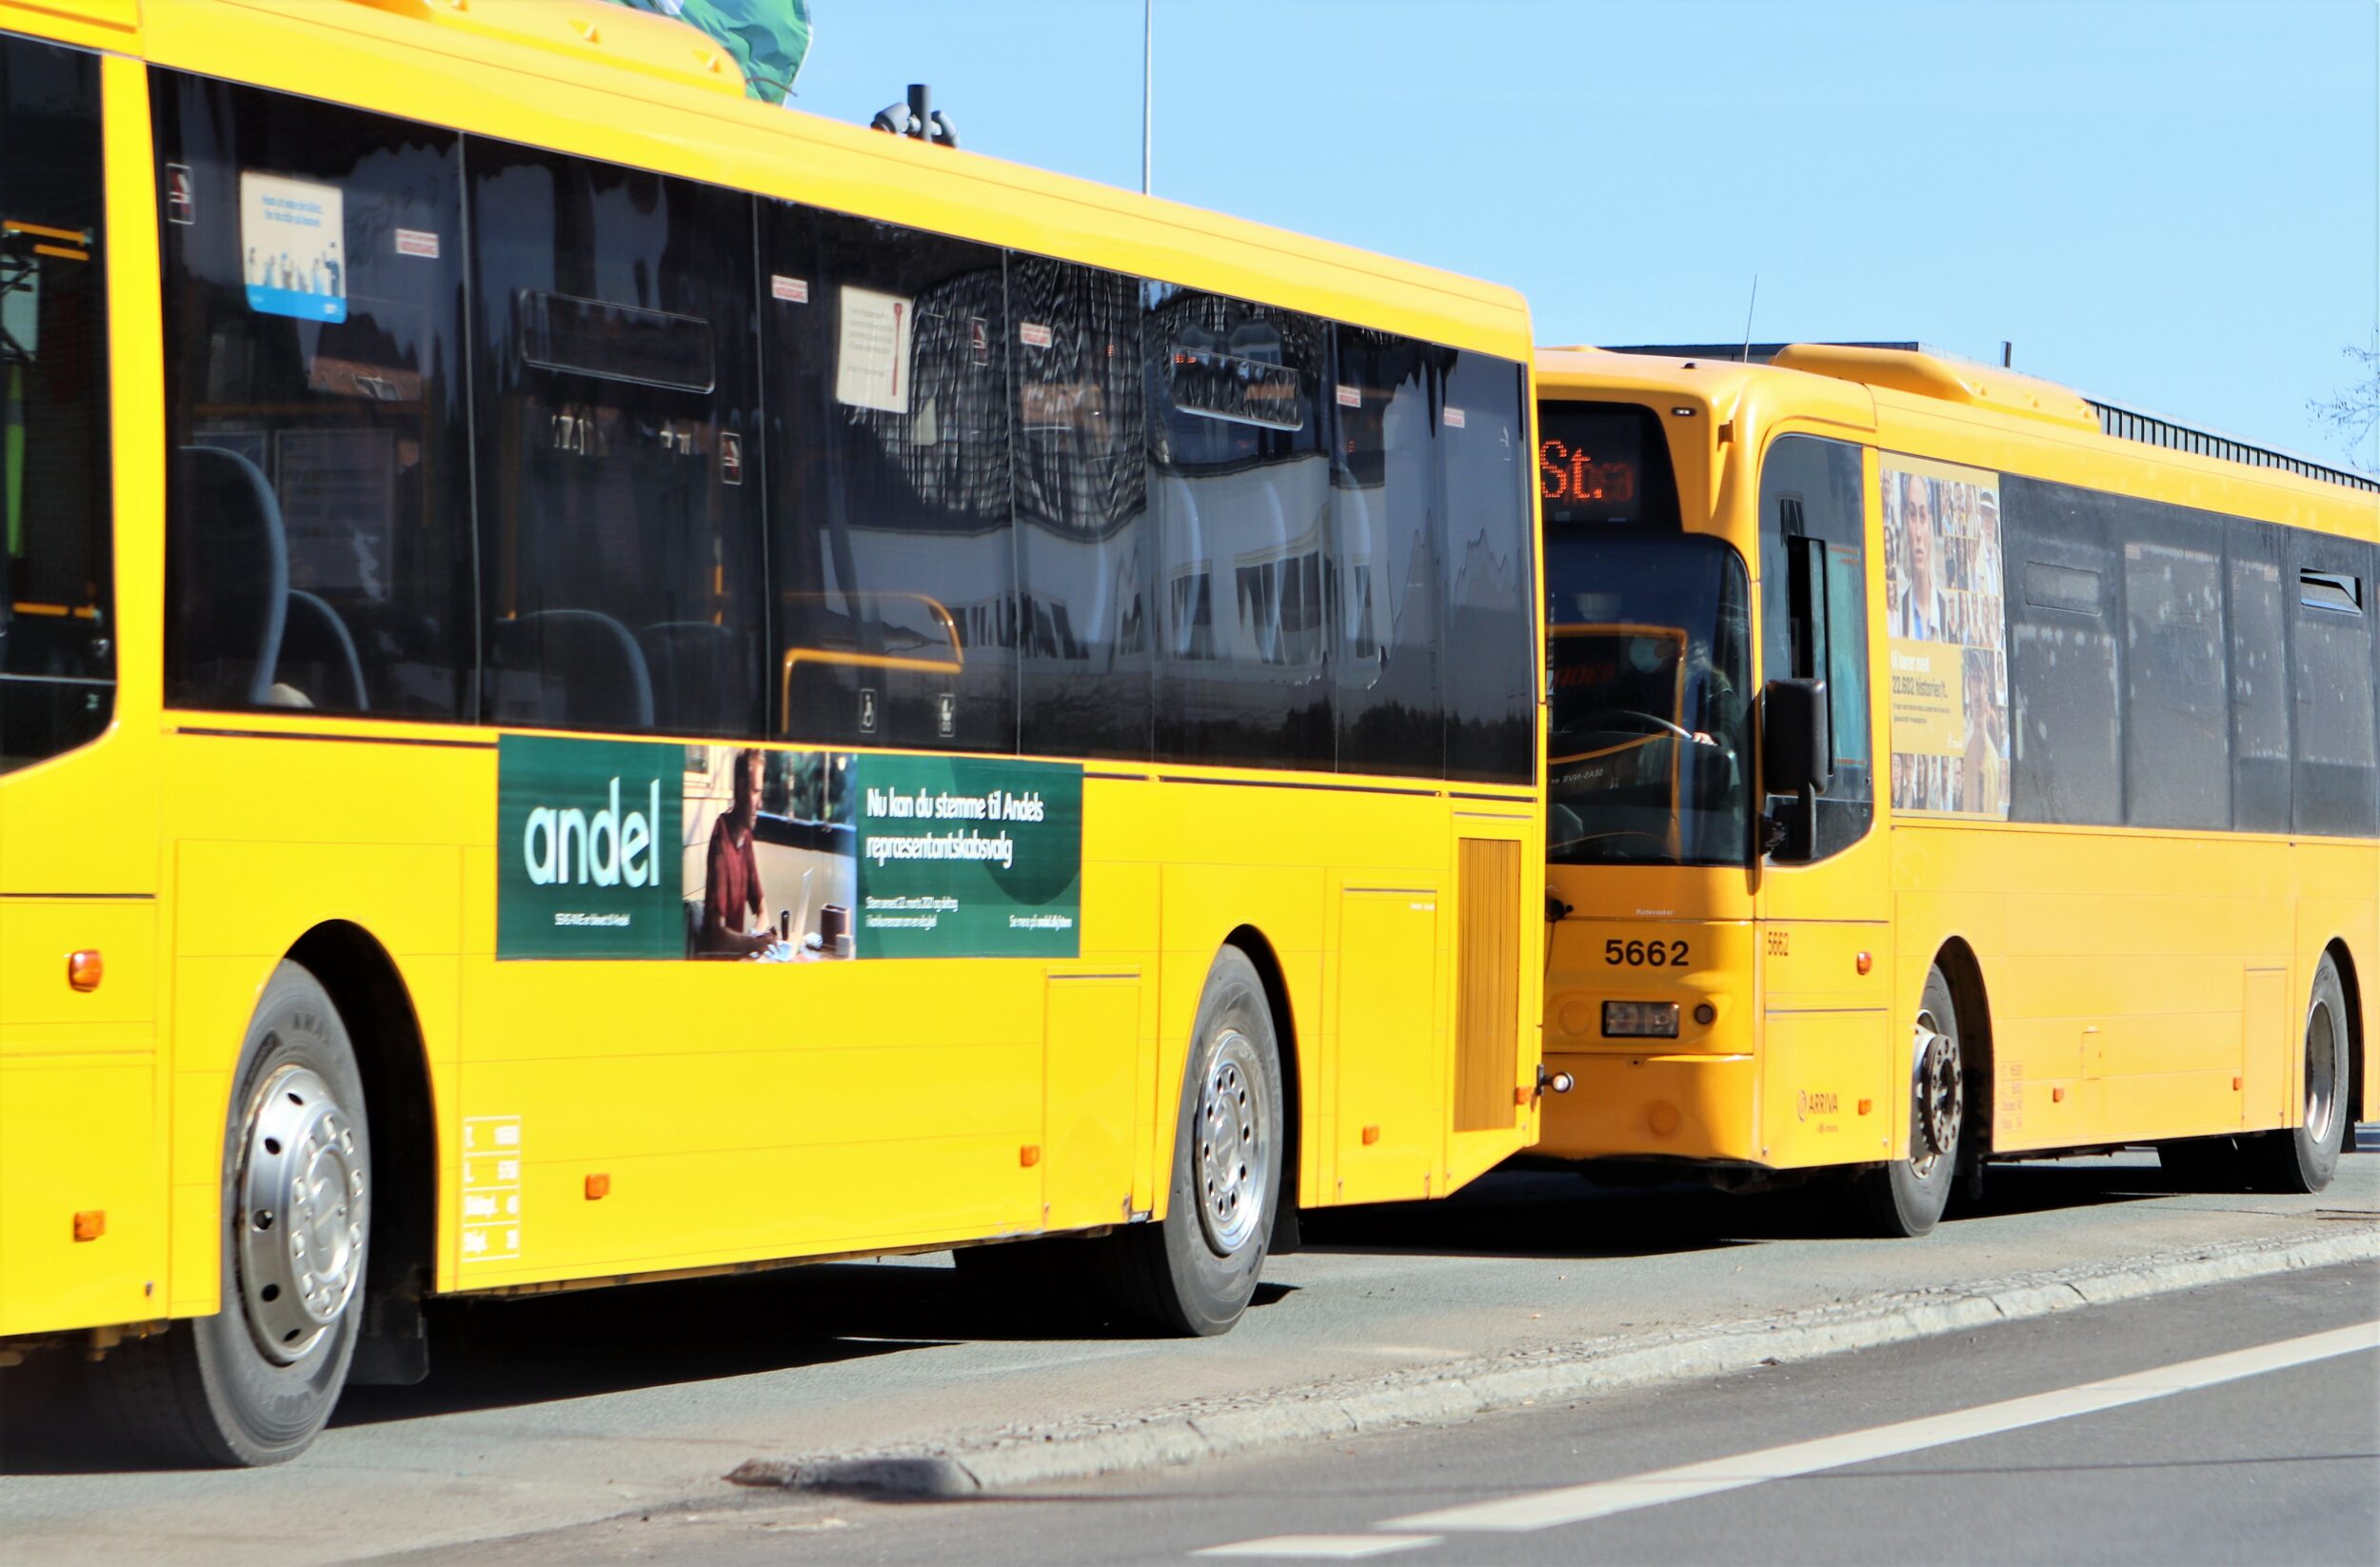 Movia genindfører kontanter i busser og Flextrafik